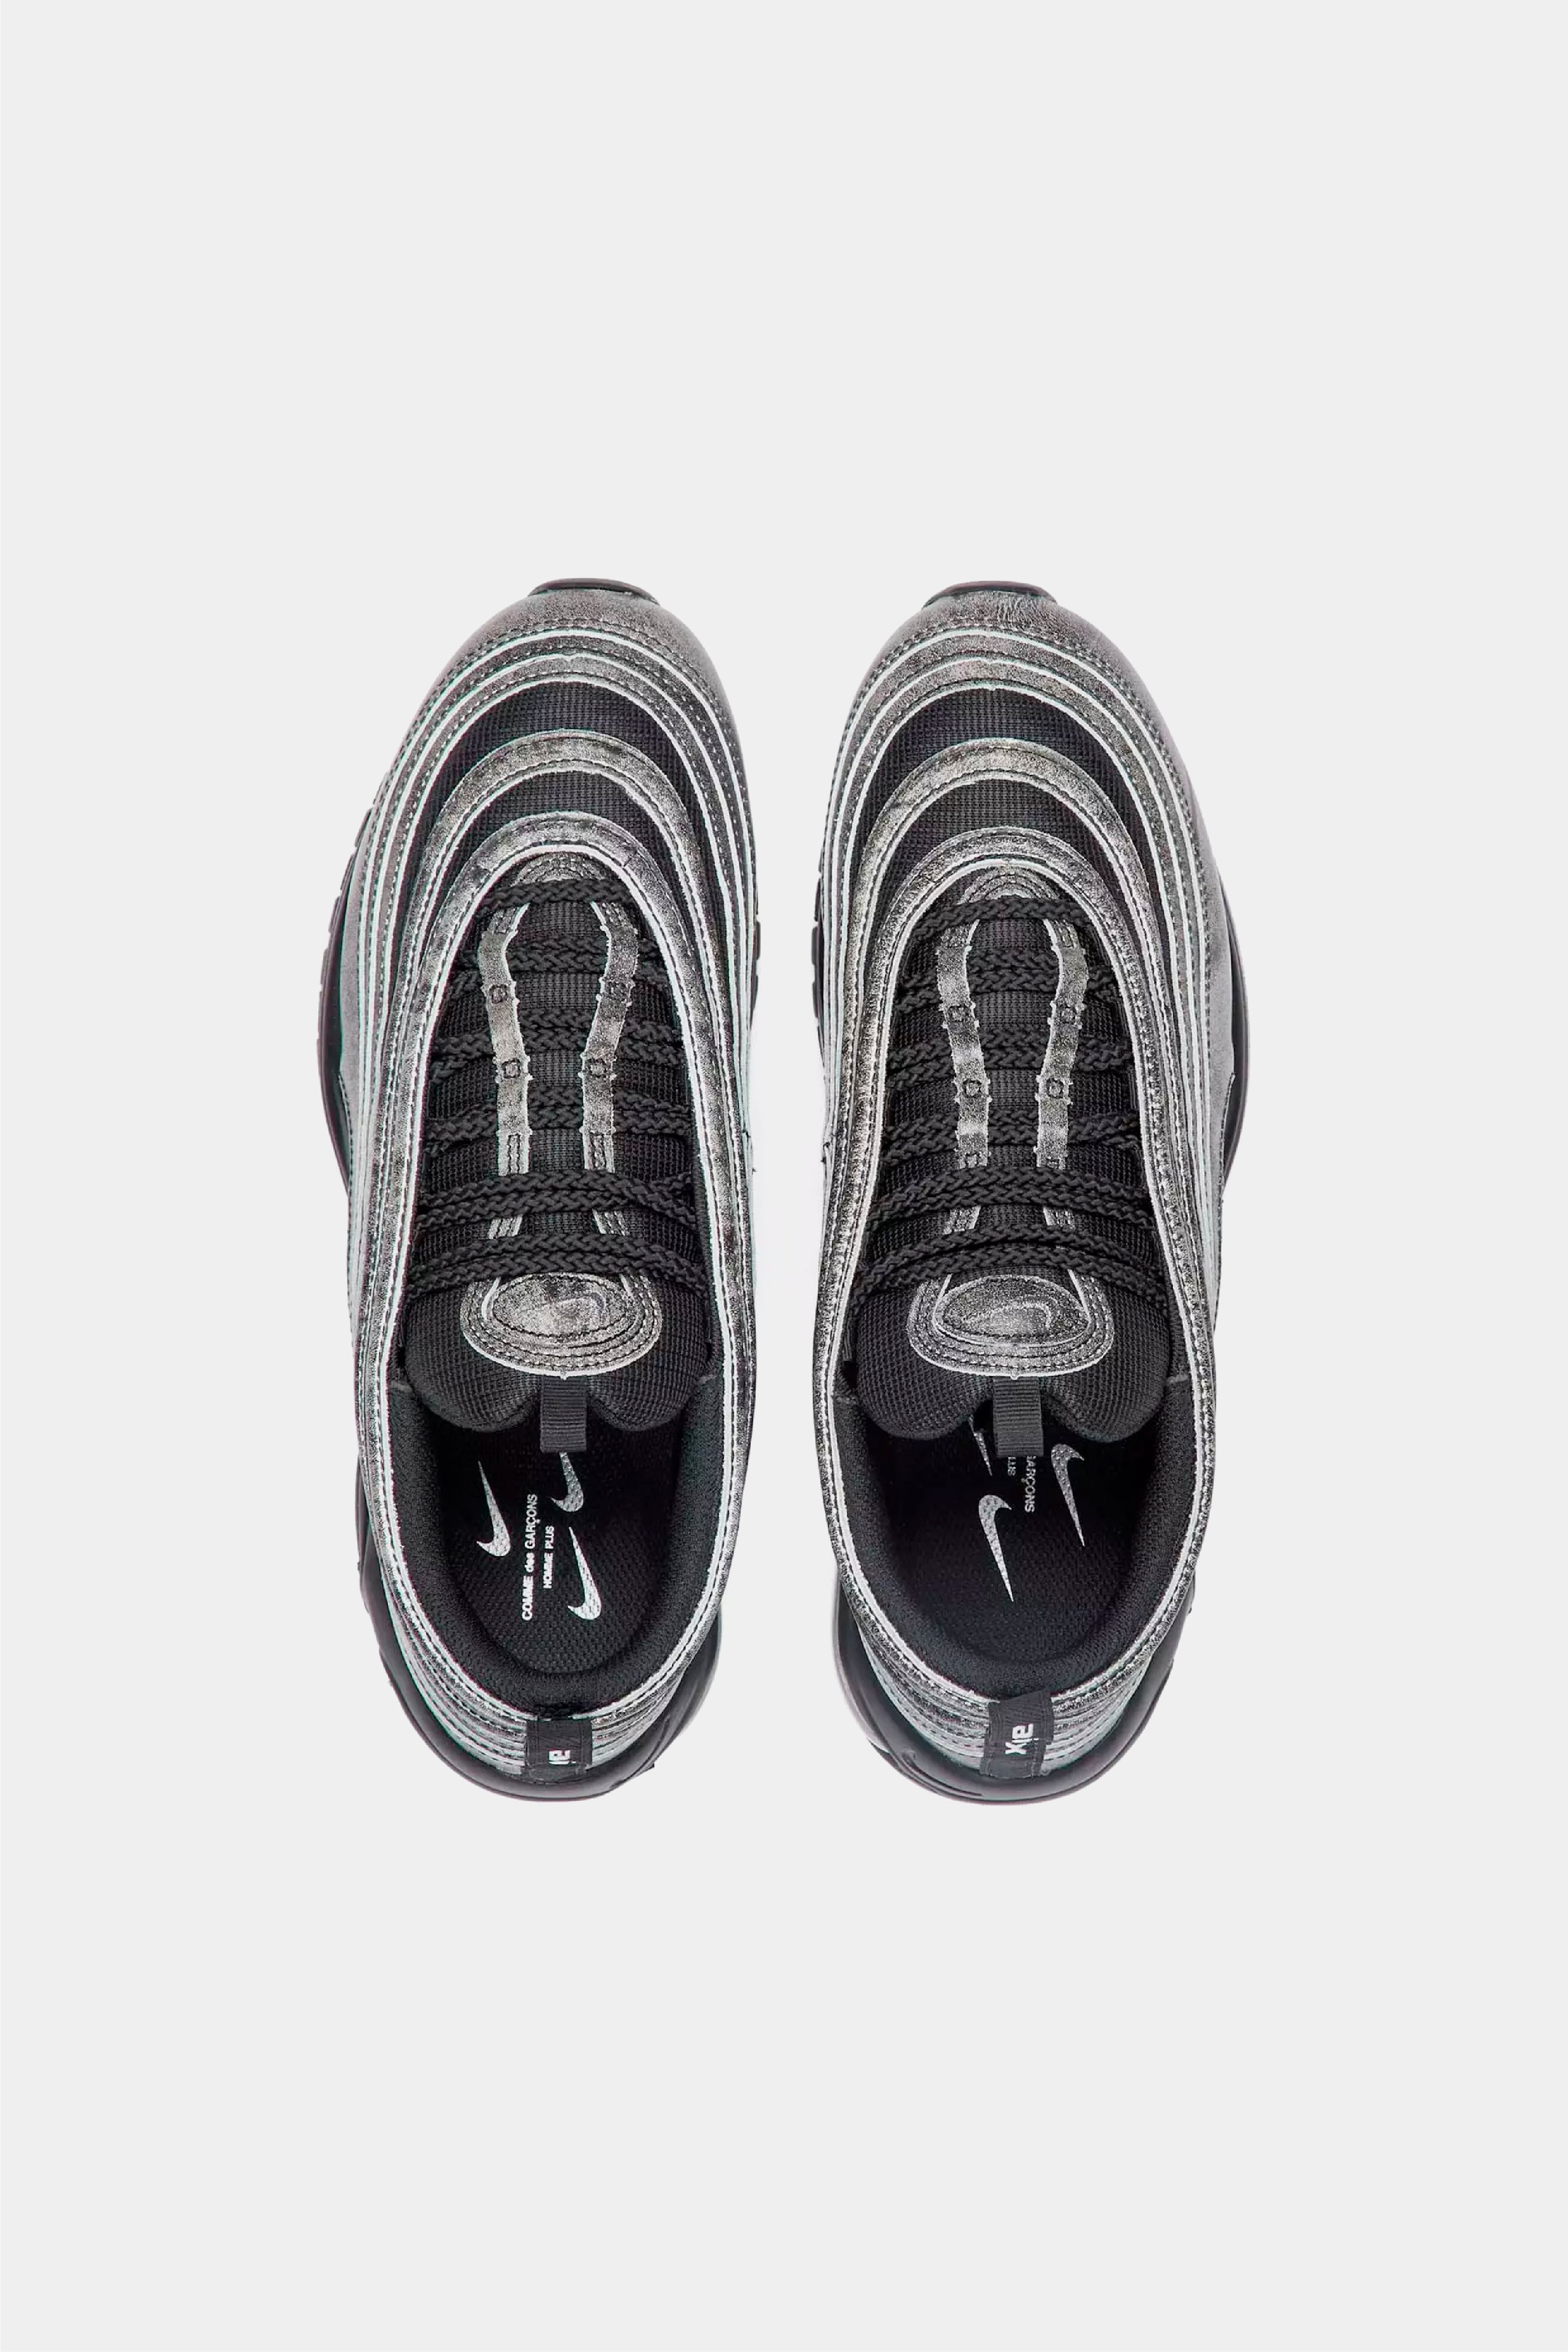 Selectshop FRAME - COMME DES GARÇONS HOMME PLUS Comme Des Garcons x Nike Air Max '97 Footwear Concept Store Dubai